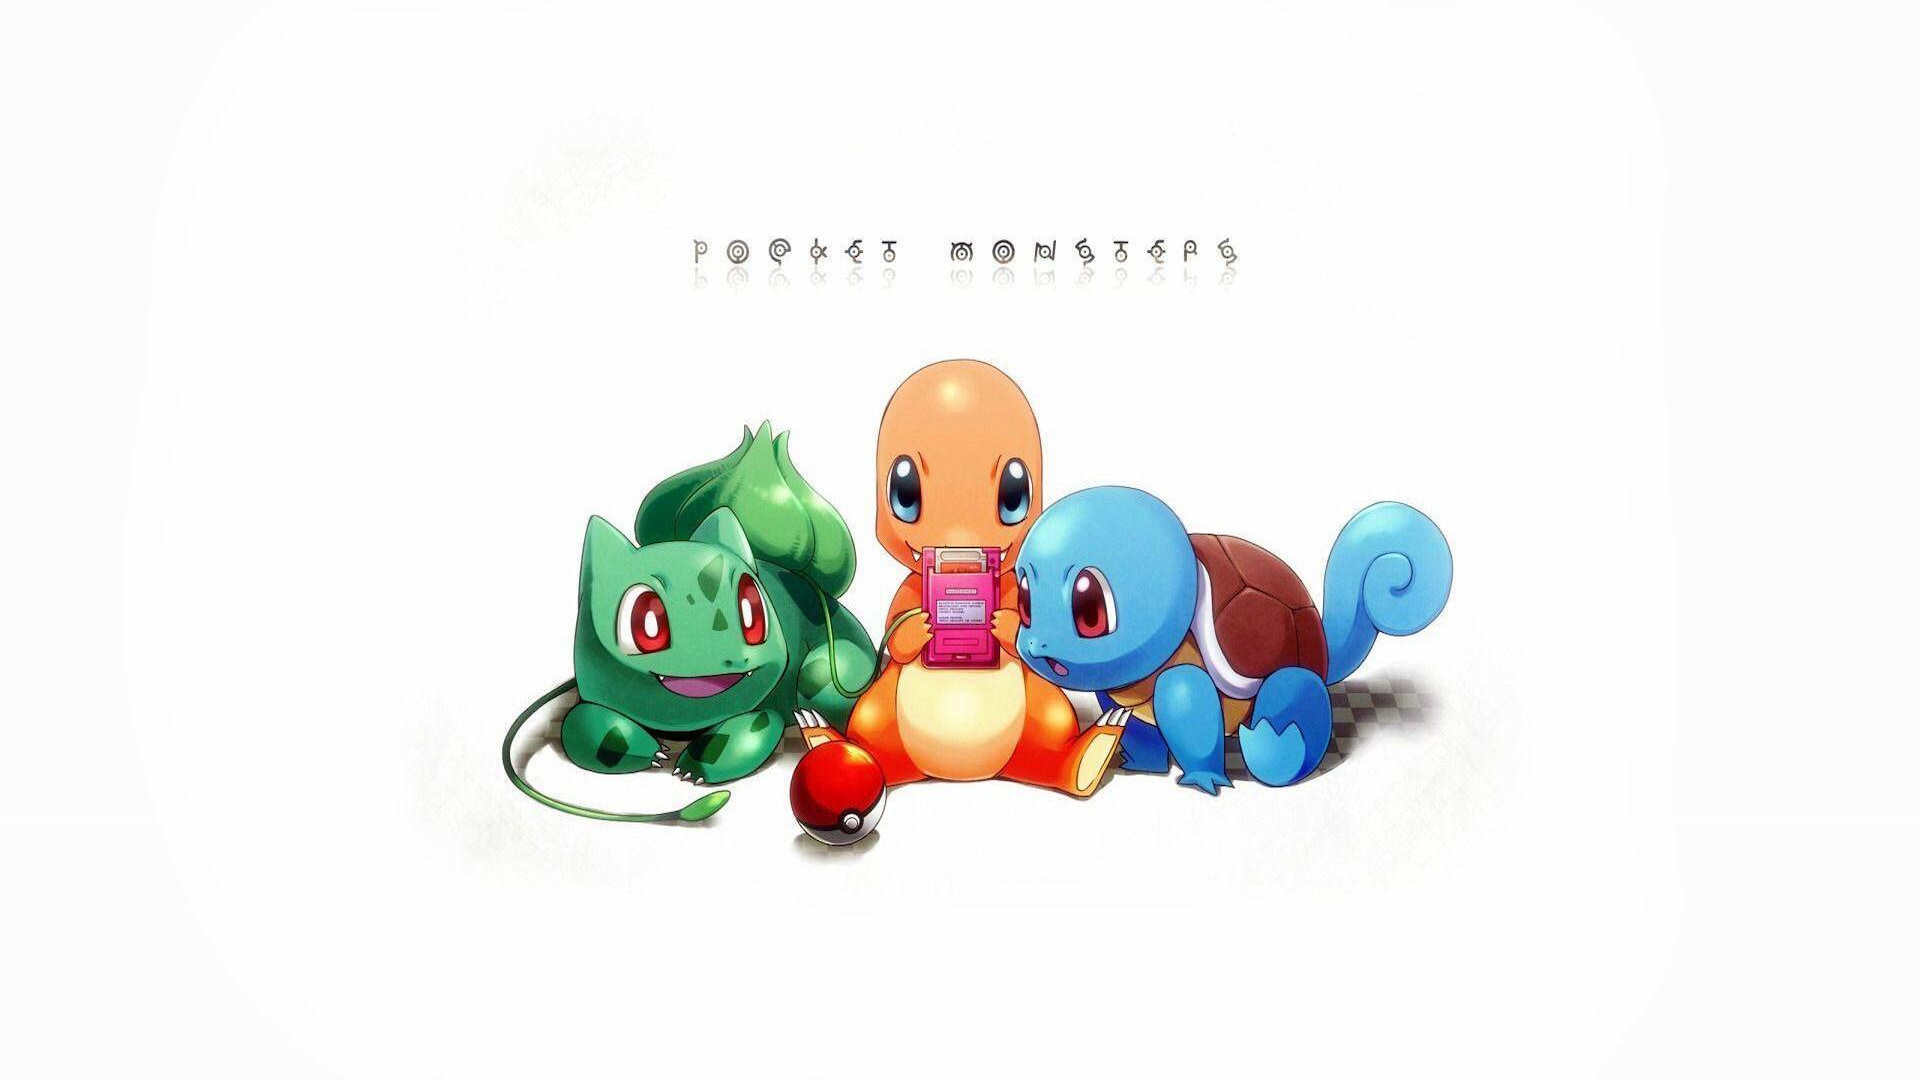 Fundo Grupo De Pokemons Estão Reunidos Na Floresta Fundo, Imagem Do Pokémon  Imagem, Pokémon, Toque Imagem de plano de fundo para download gratuito